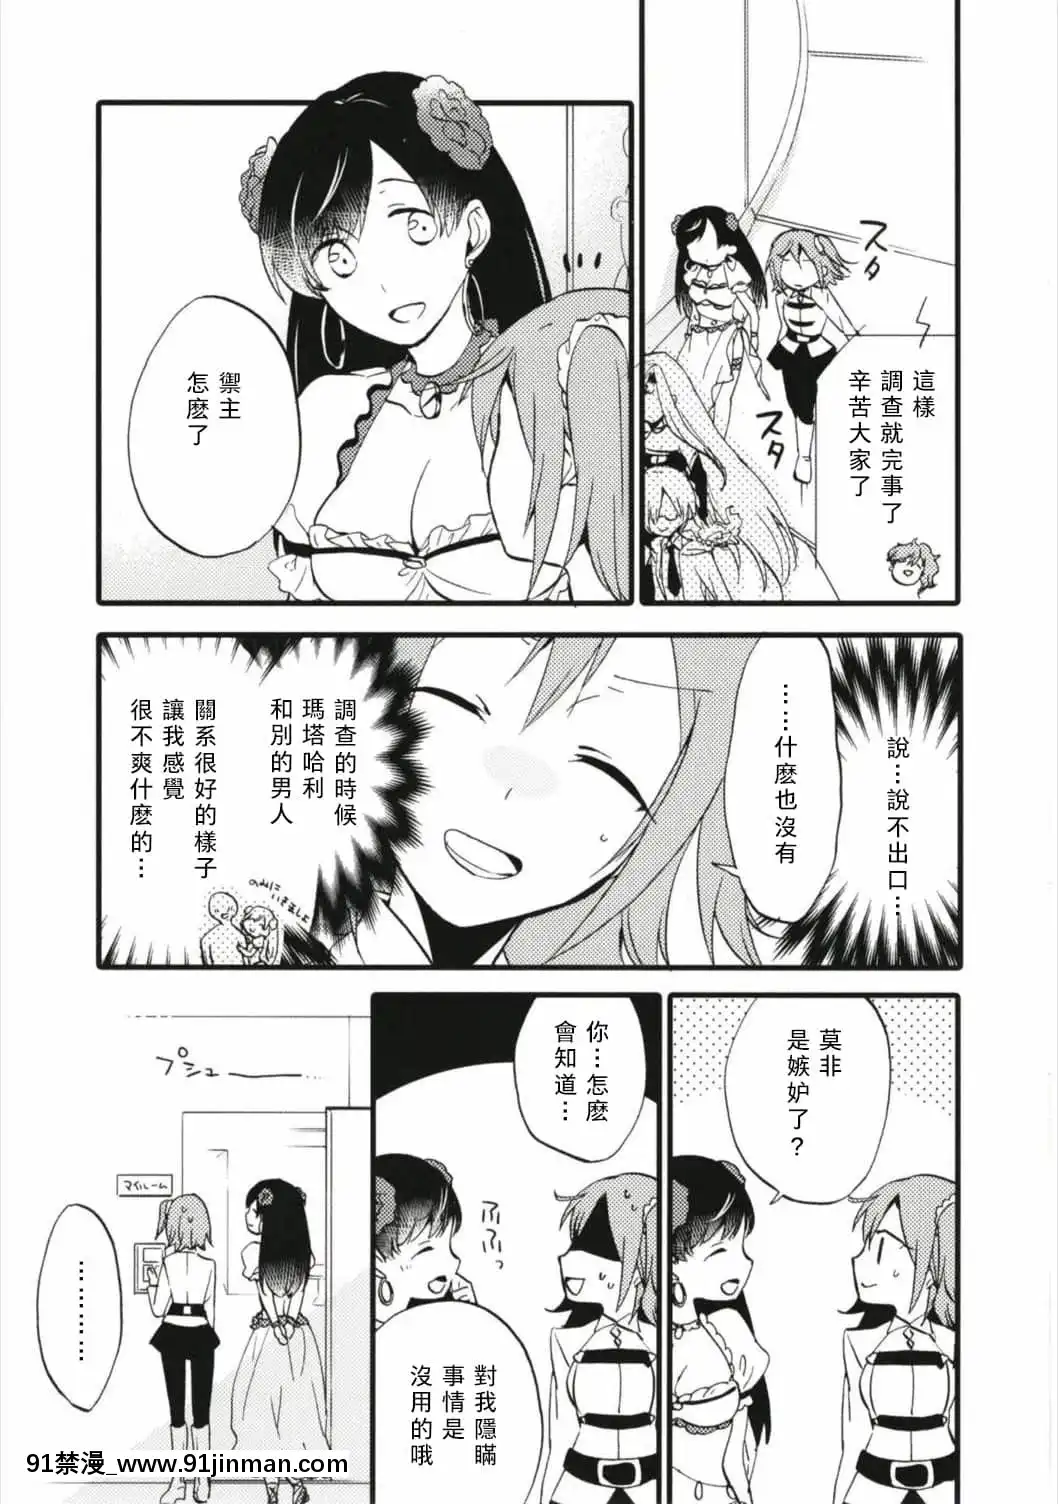 [Không có gì] [Niratama (Sekihara, Hiroto)] MG 001 (Fate╱GrandOrder)【truyện tranh 17 sai kiss to dilemma】